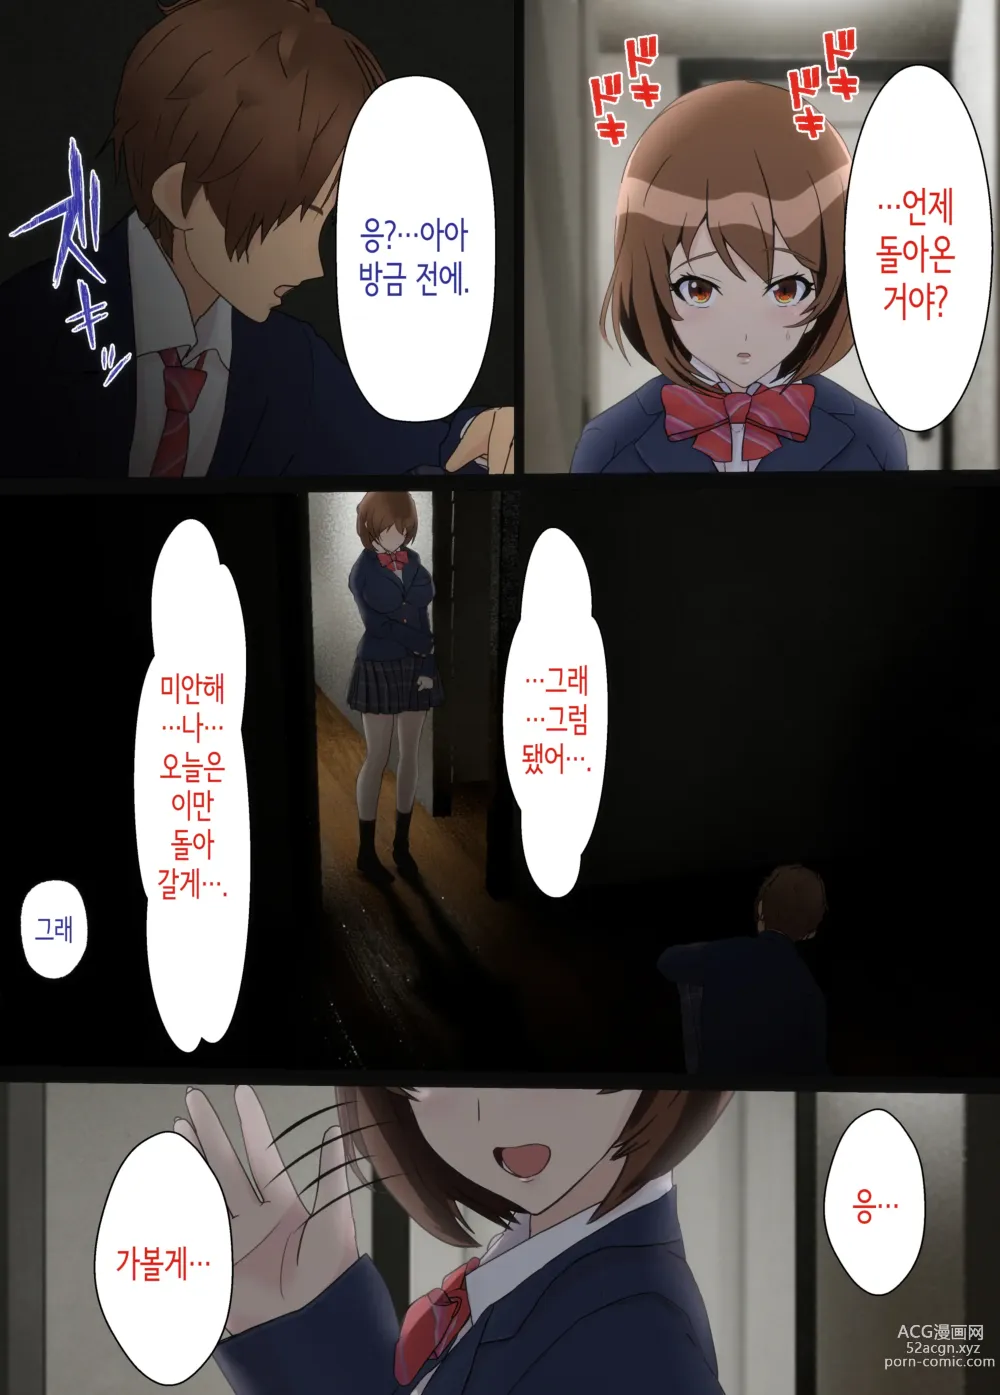 Page 52 of doujinshi 소꿉친구는 아버지의 여자친구 ~조만간 사귈 수 있을 거라고 생각했던 소꿉친구가 어느새 아버지와 SEX하고 있었다...~